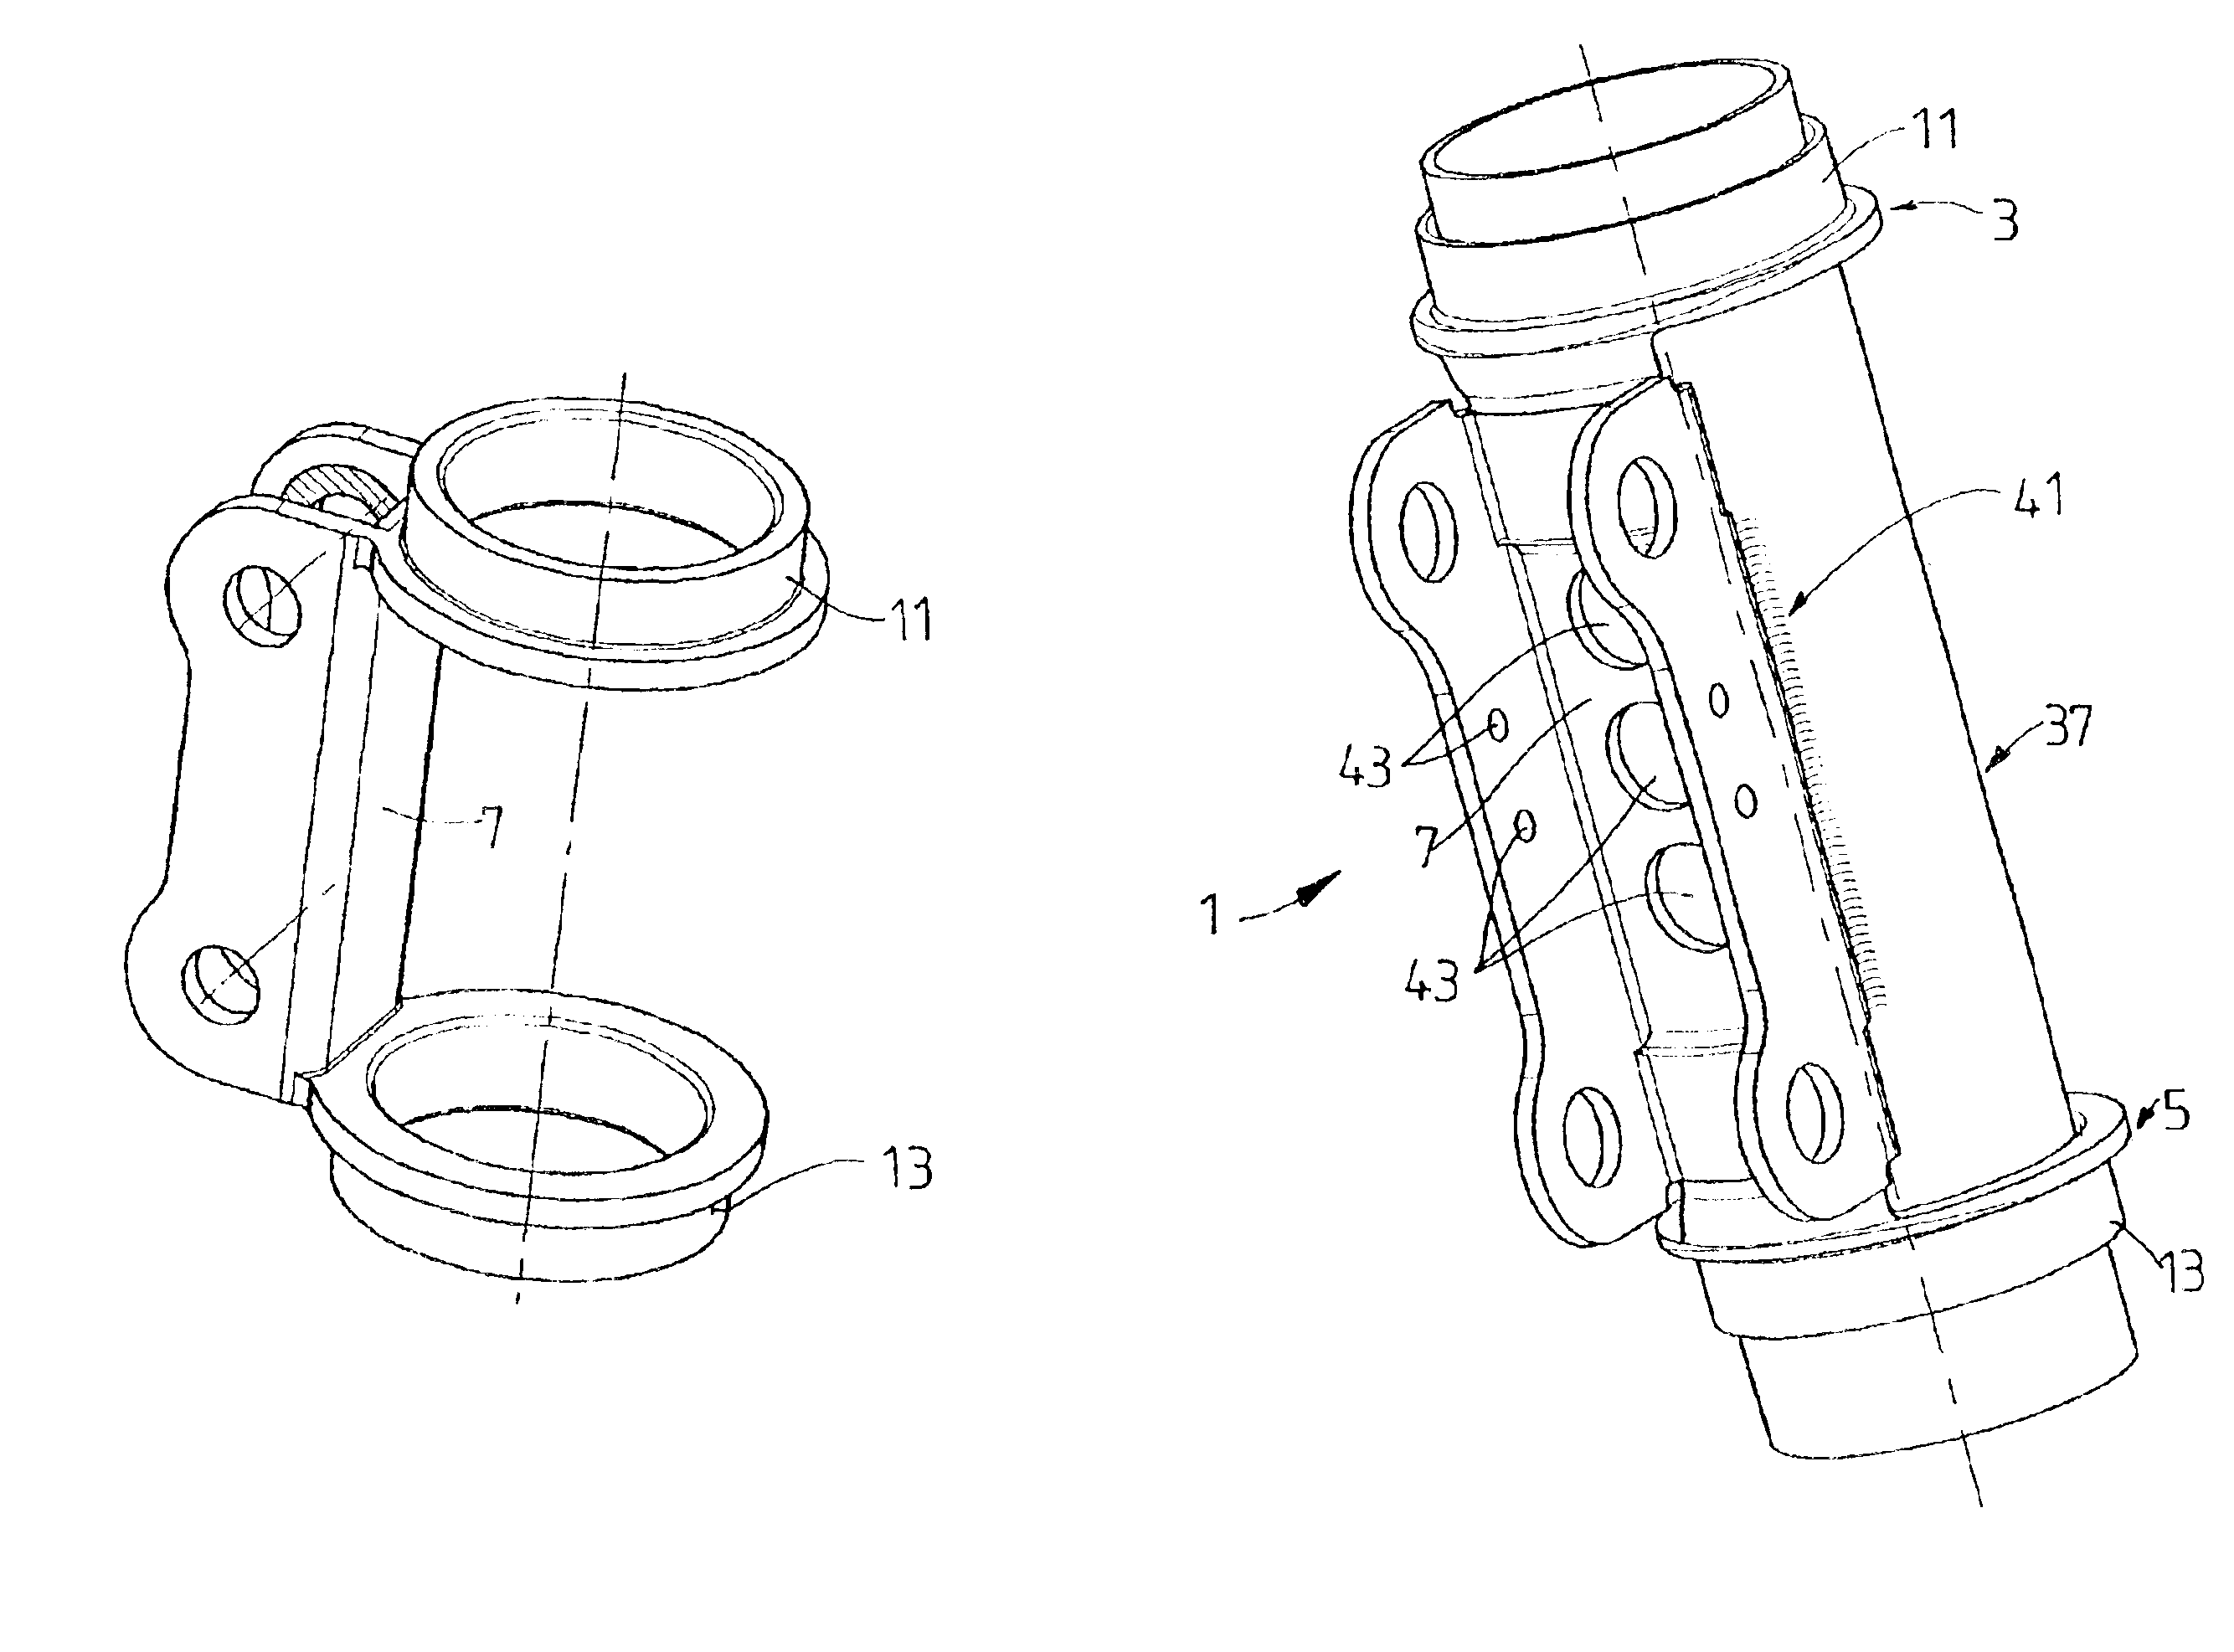 Knuckle bracket for a strut-type shock absorber